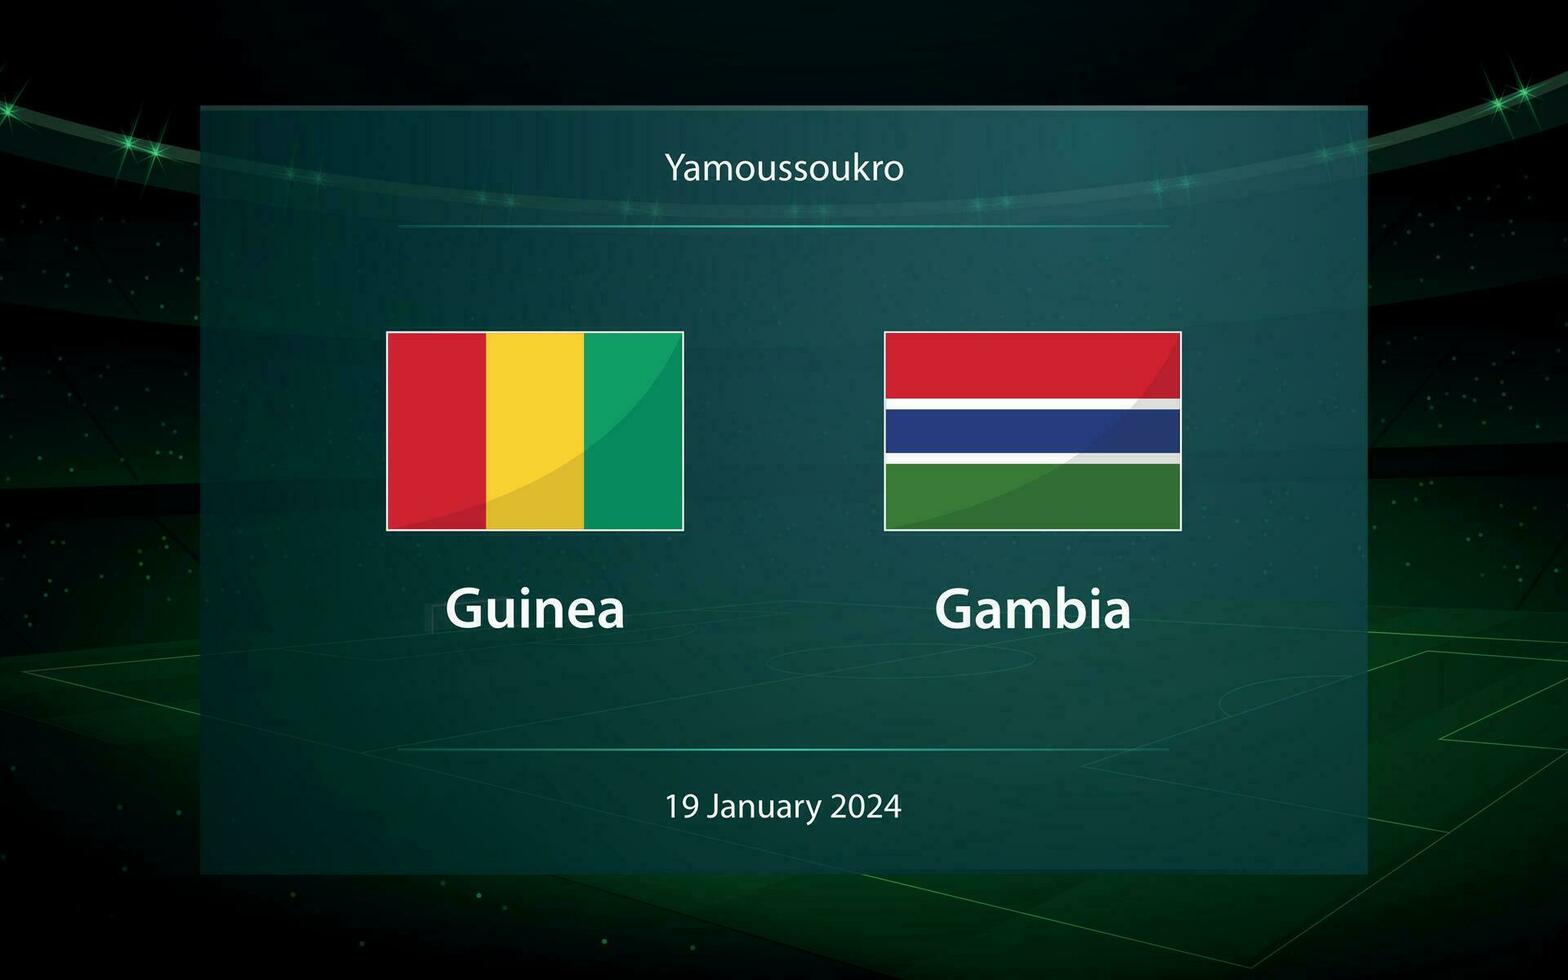 Guinea vs Gambia. Football scoreboard broadcast graphic vector